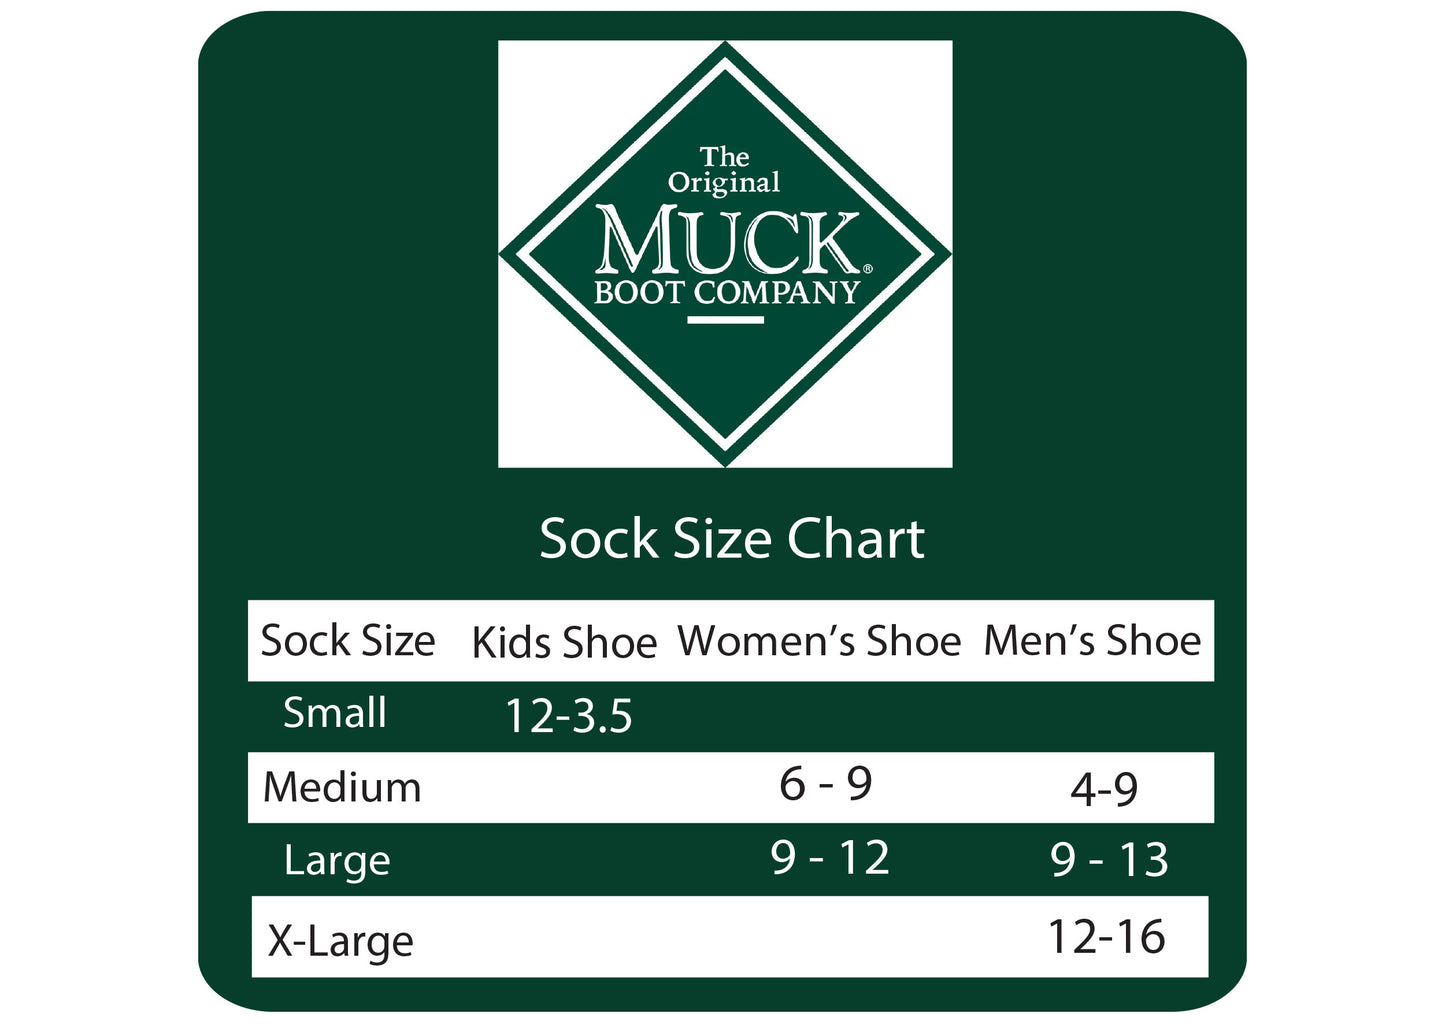 Muck Boot Ladies Lightweight 65% Merino Wool Knee High Boot Socks 1 Pair Pack